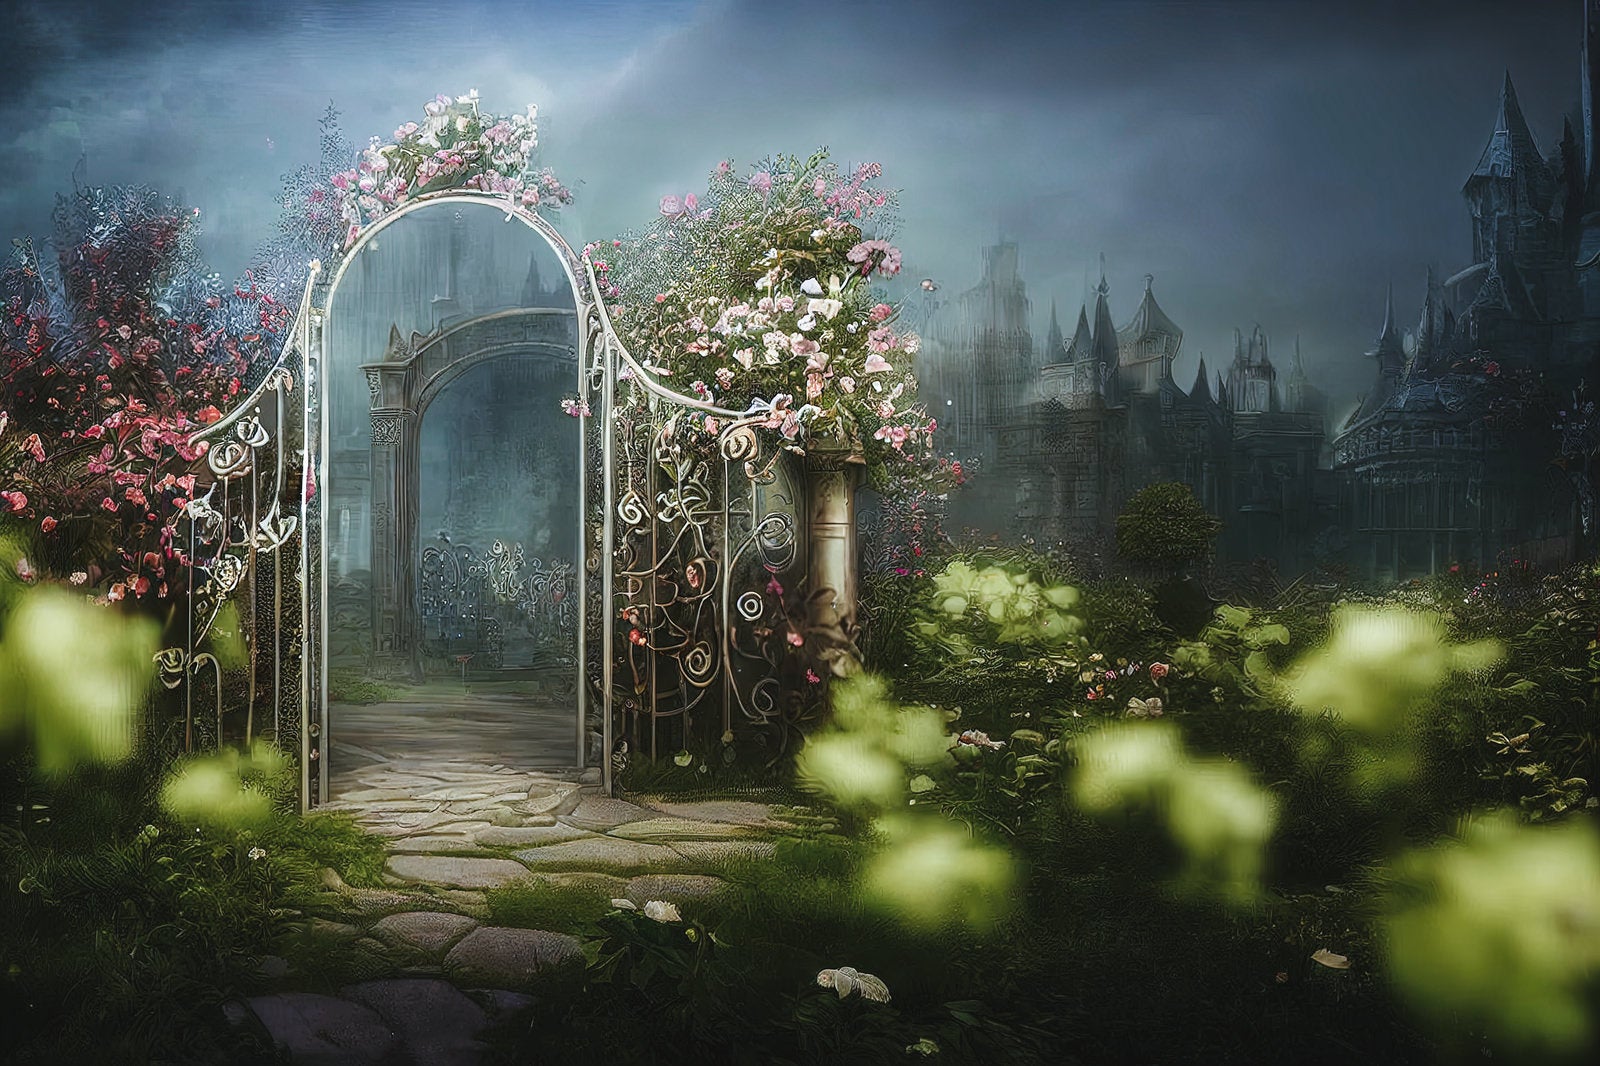 「中庭へと続く花で彩られた門」の写真